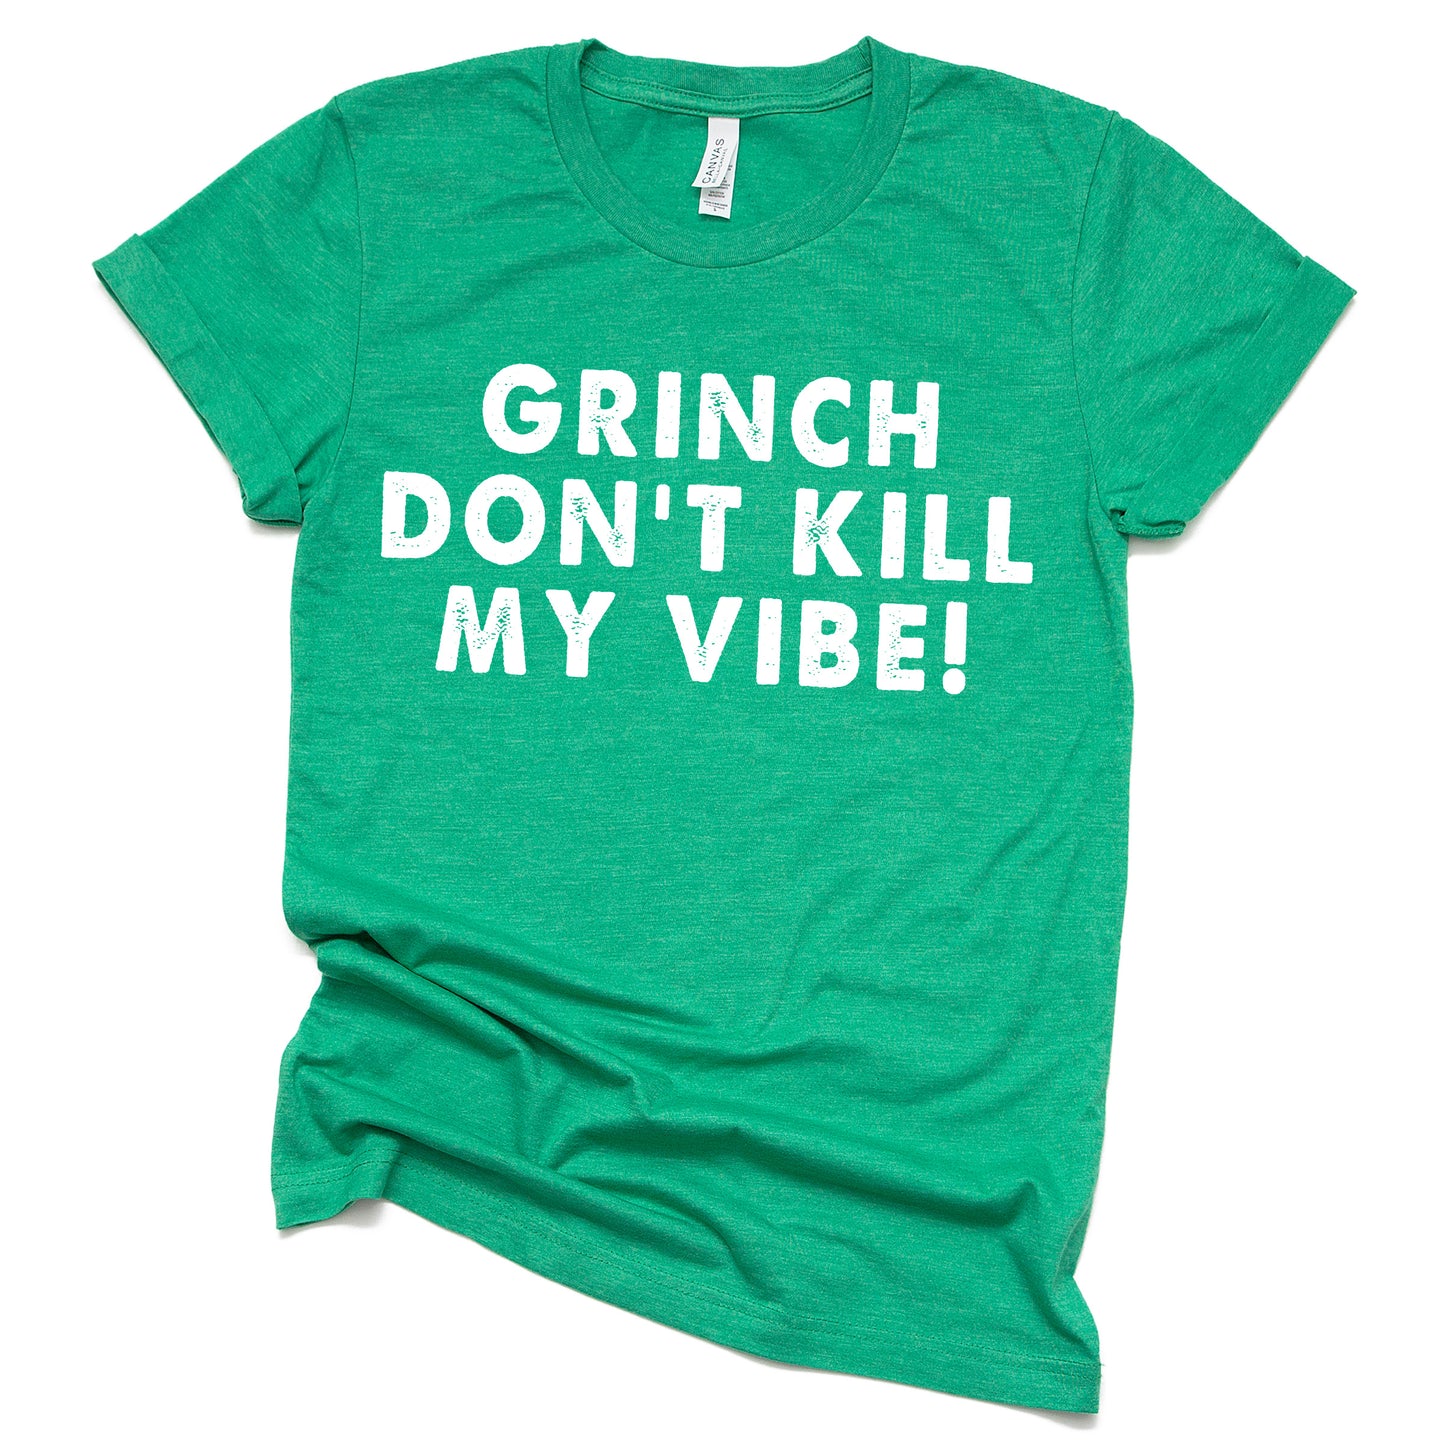 "Grinch Don't Kill My Vibe" Tee